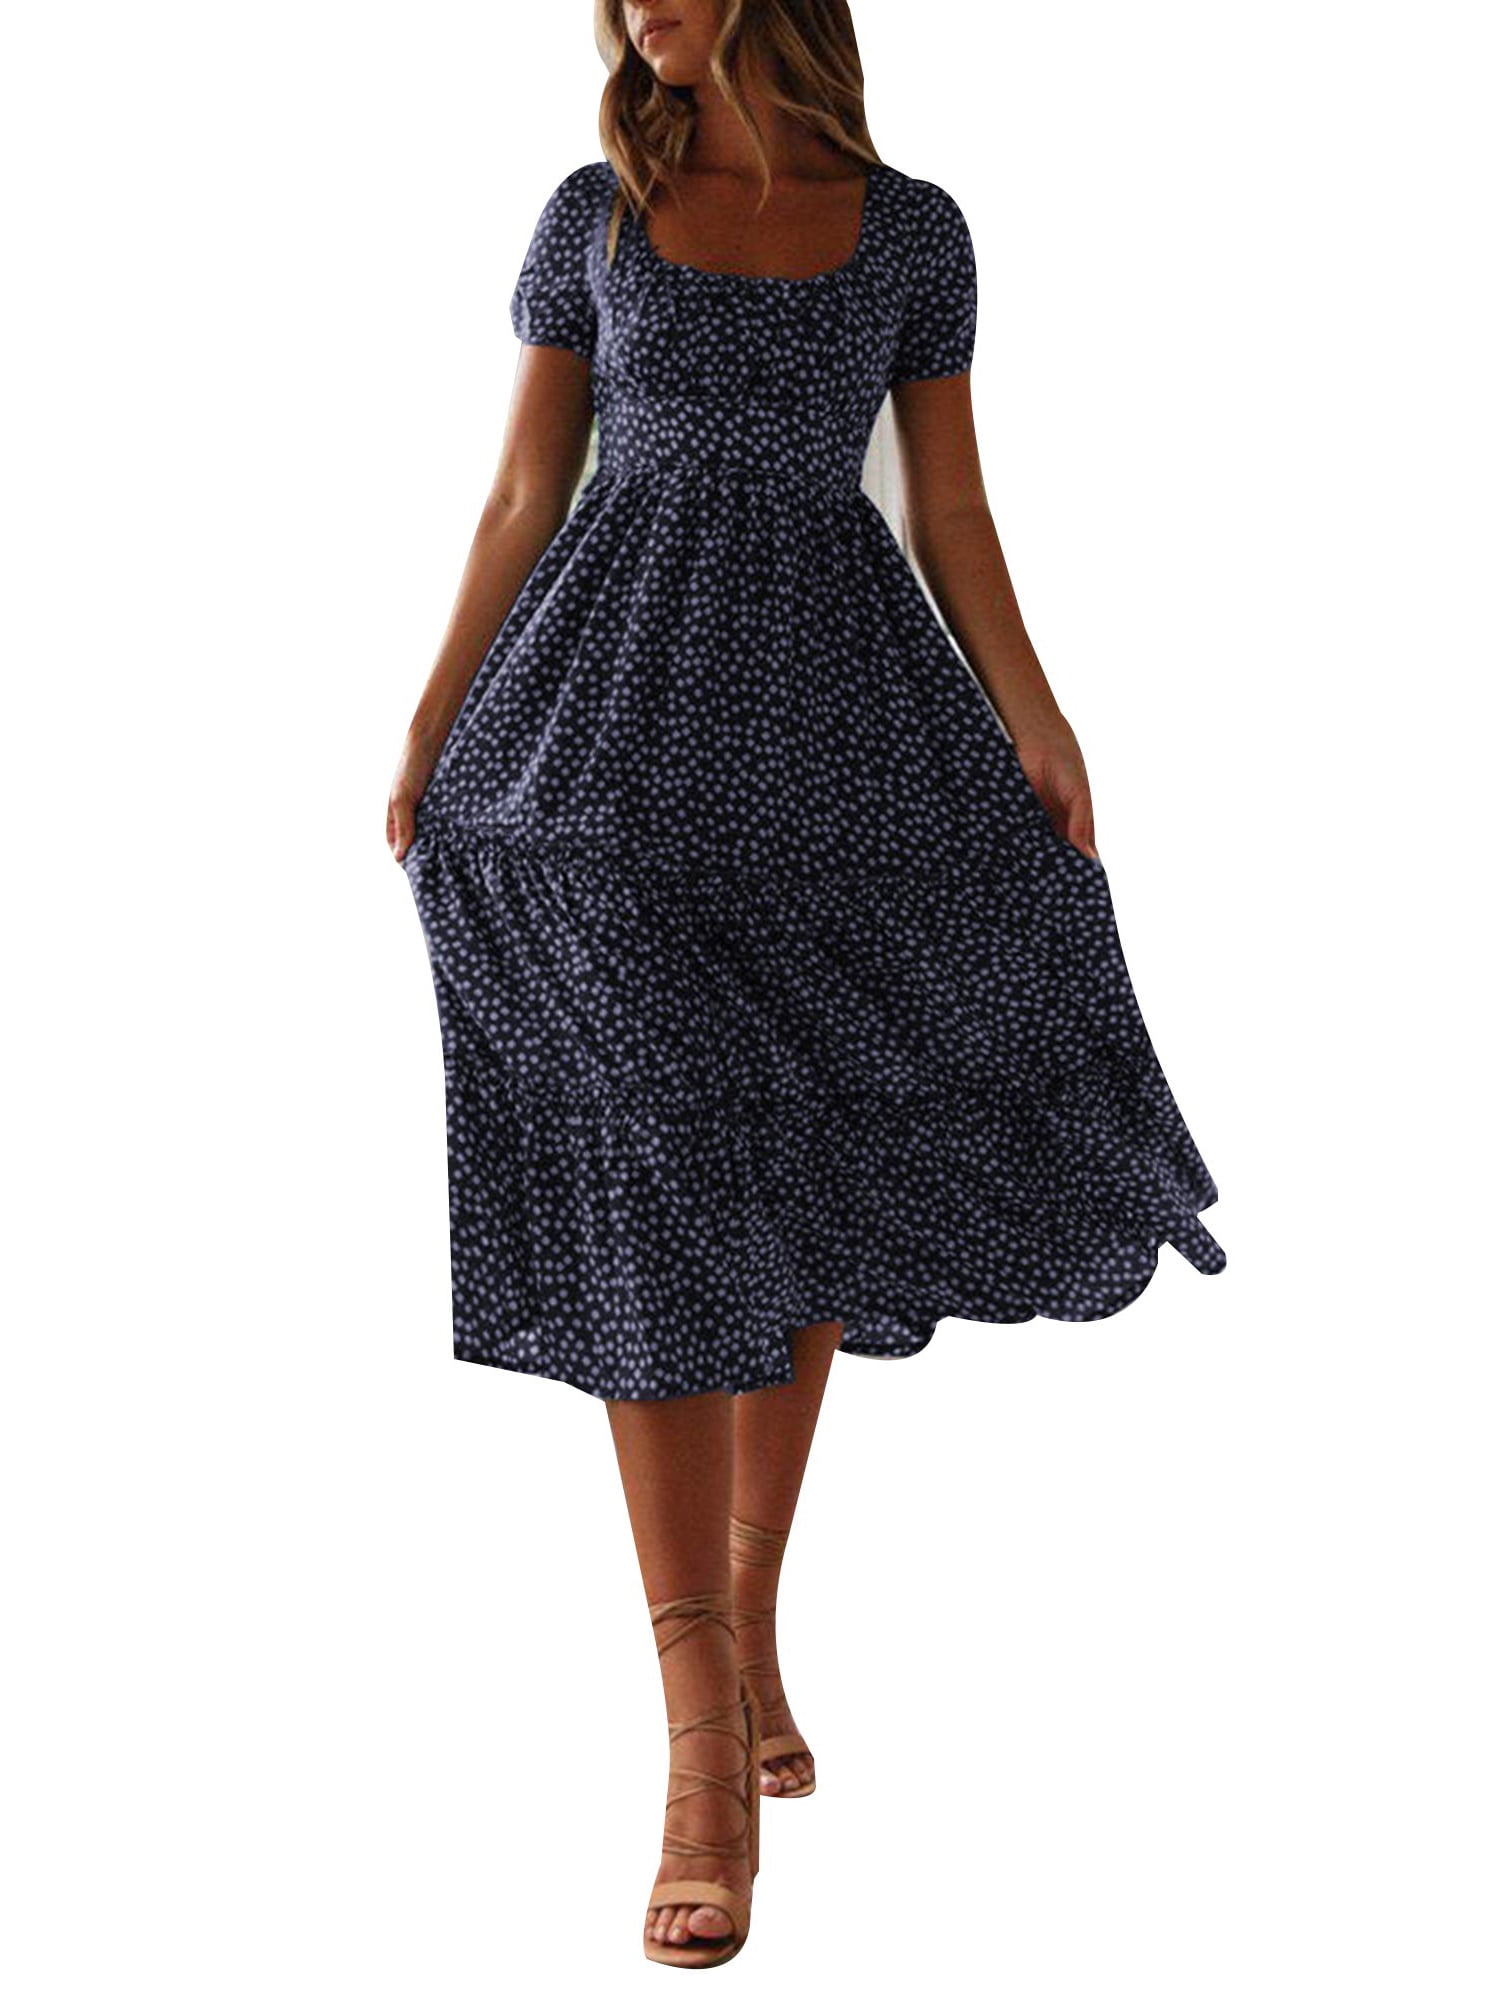 Julycc Womens Boho Floral Dress Summer Short Sleeve Maxi Dress ...